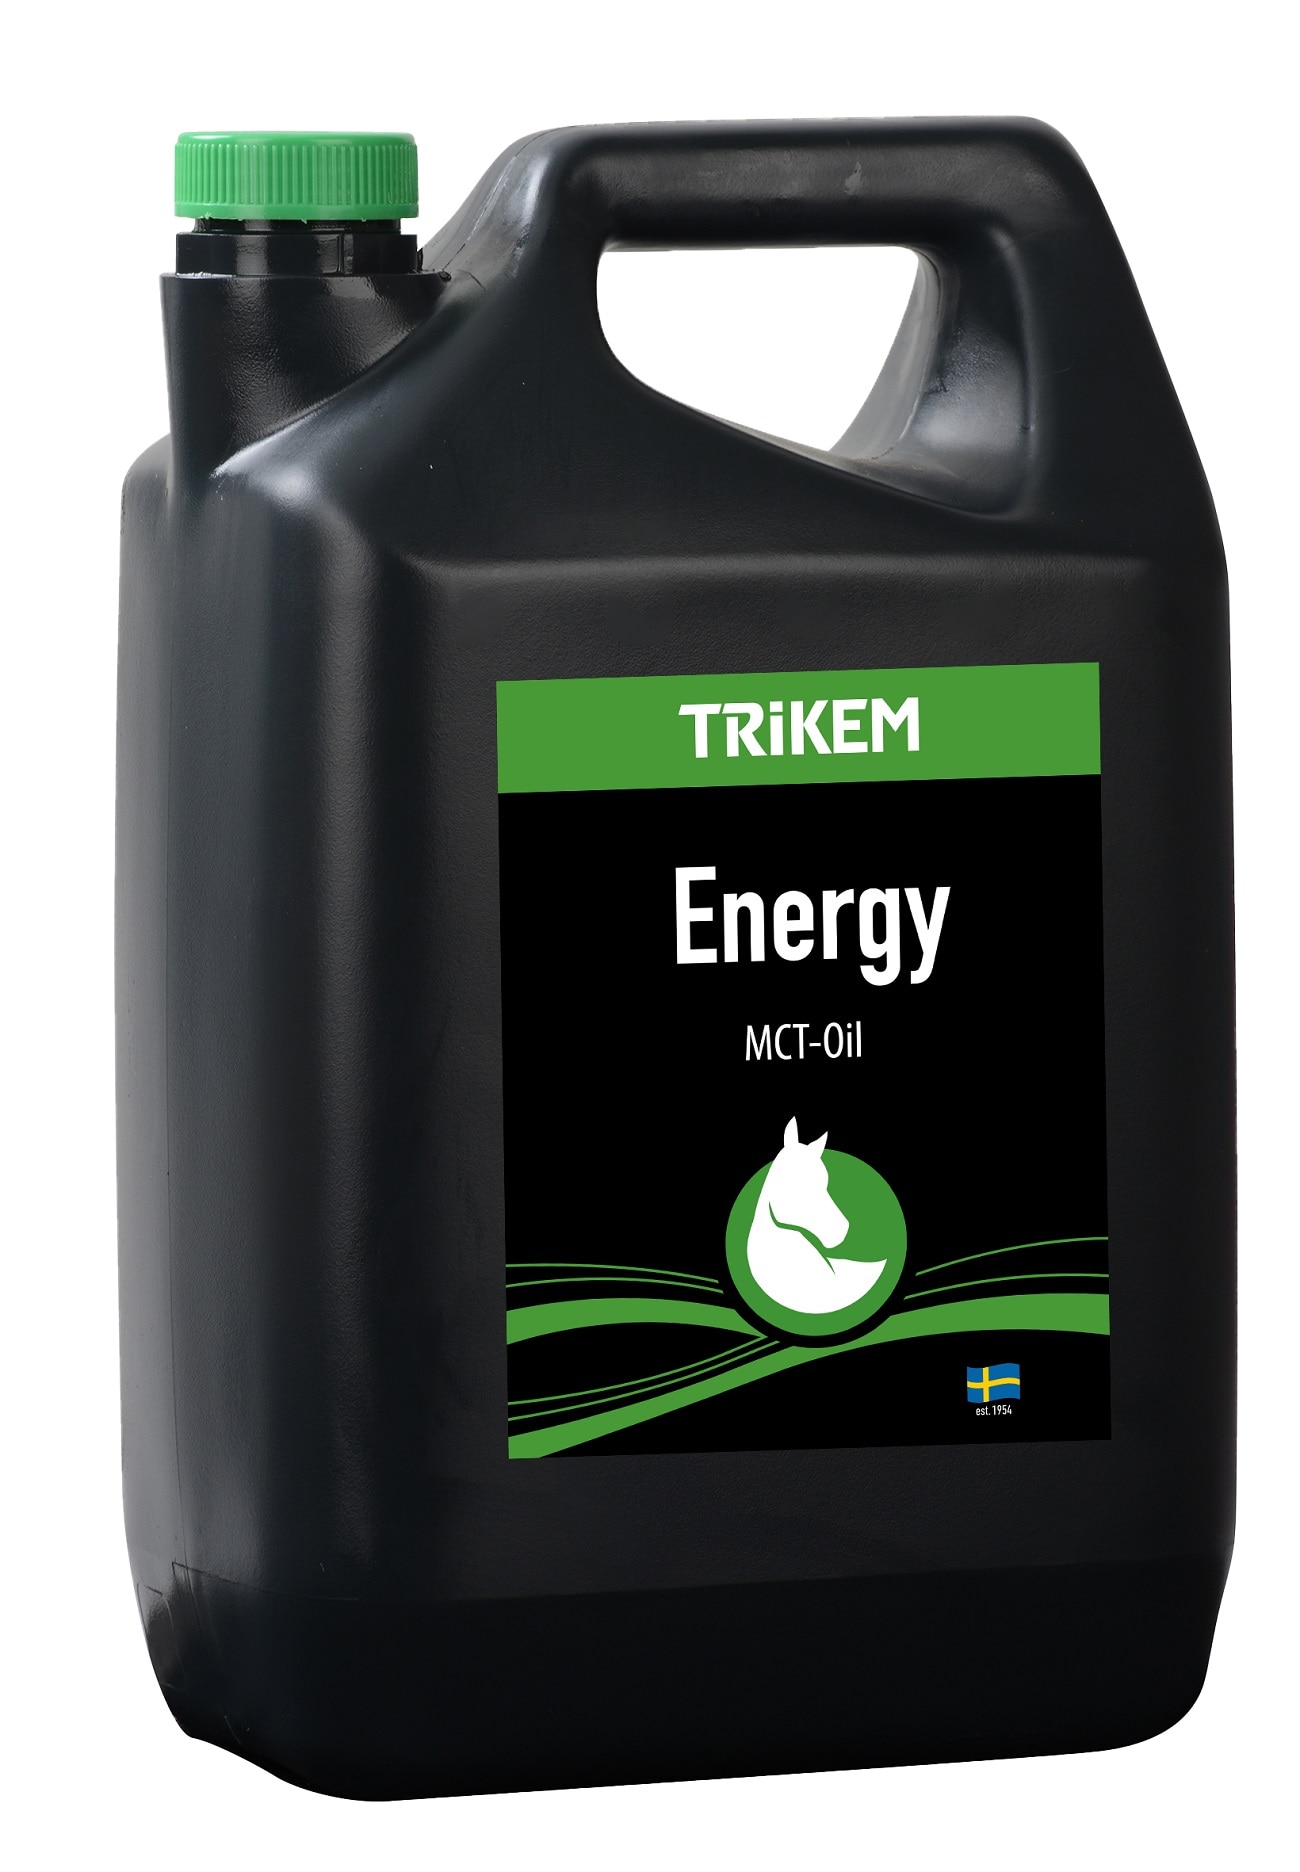 Trikem Energy Oil, 2500 ml